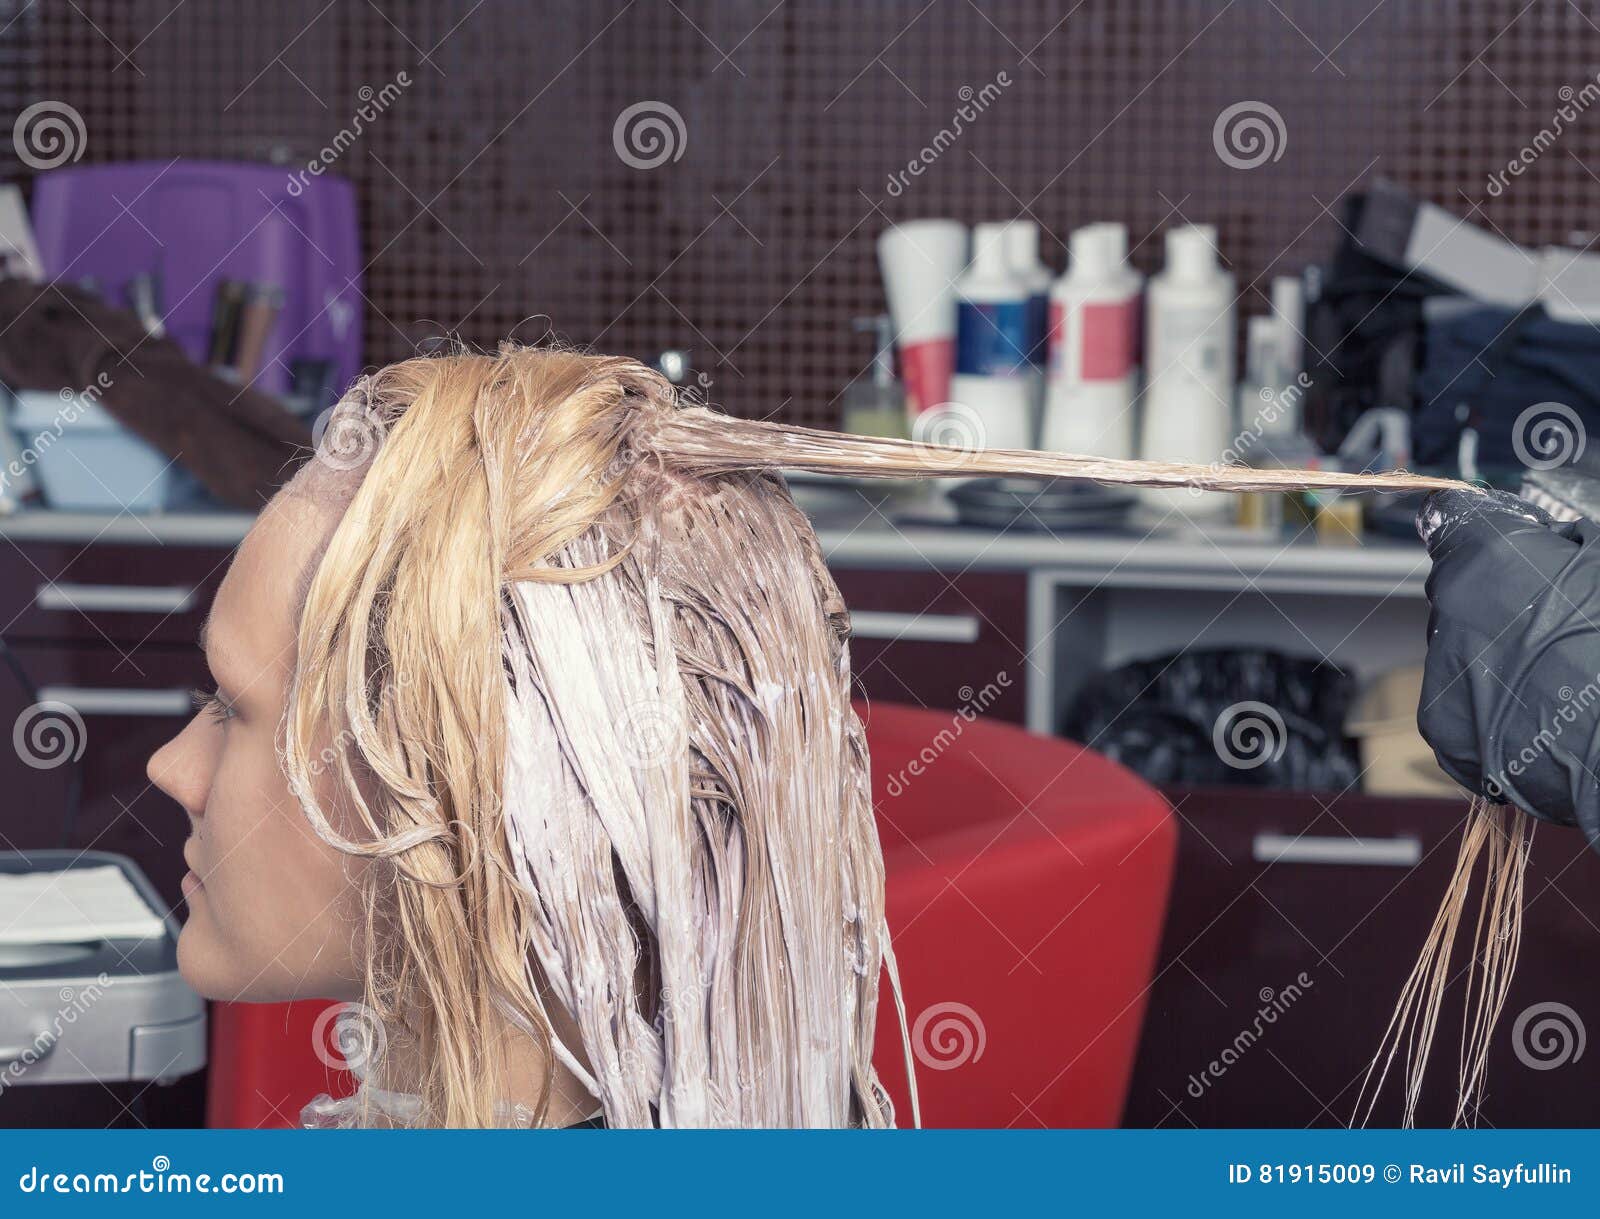 coloring blonde virgin hair